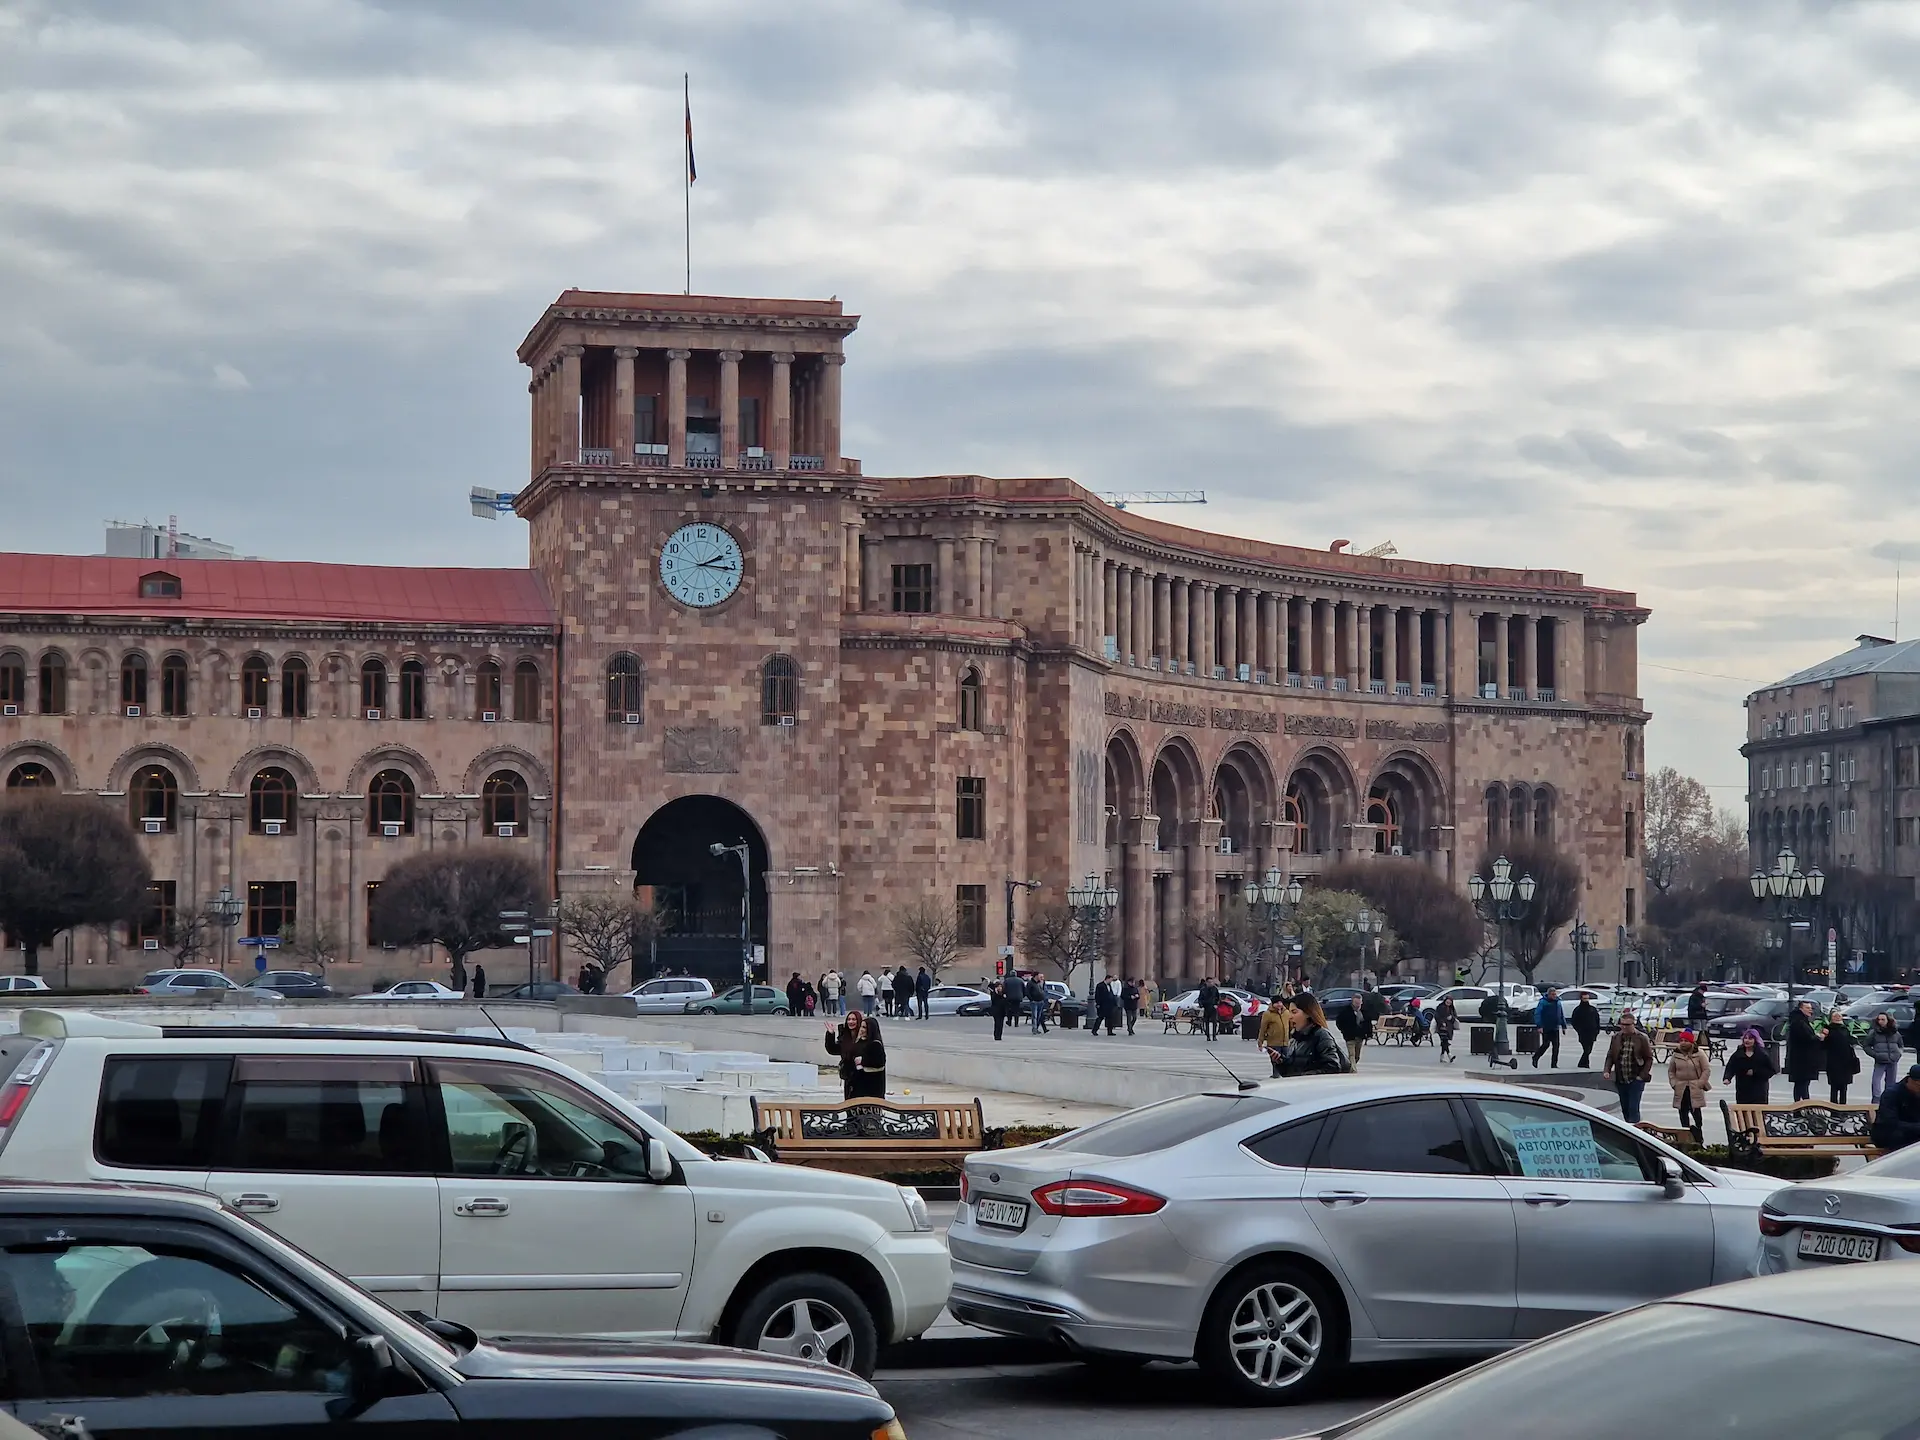 Un grand immeuble de pierre rose à la place de la République à Yerevan, avec du trafic, du monde, une horloge sur la façade.